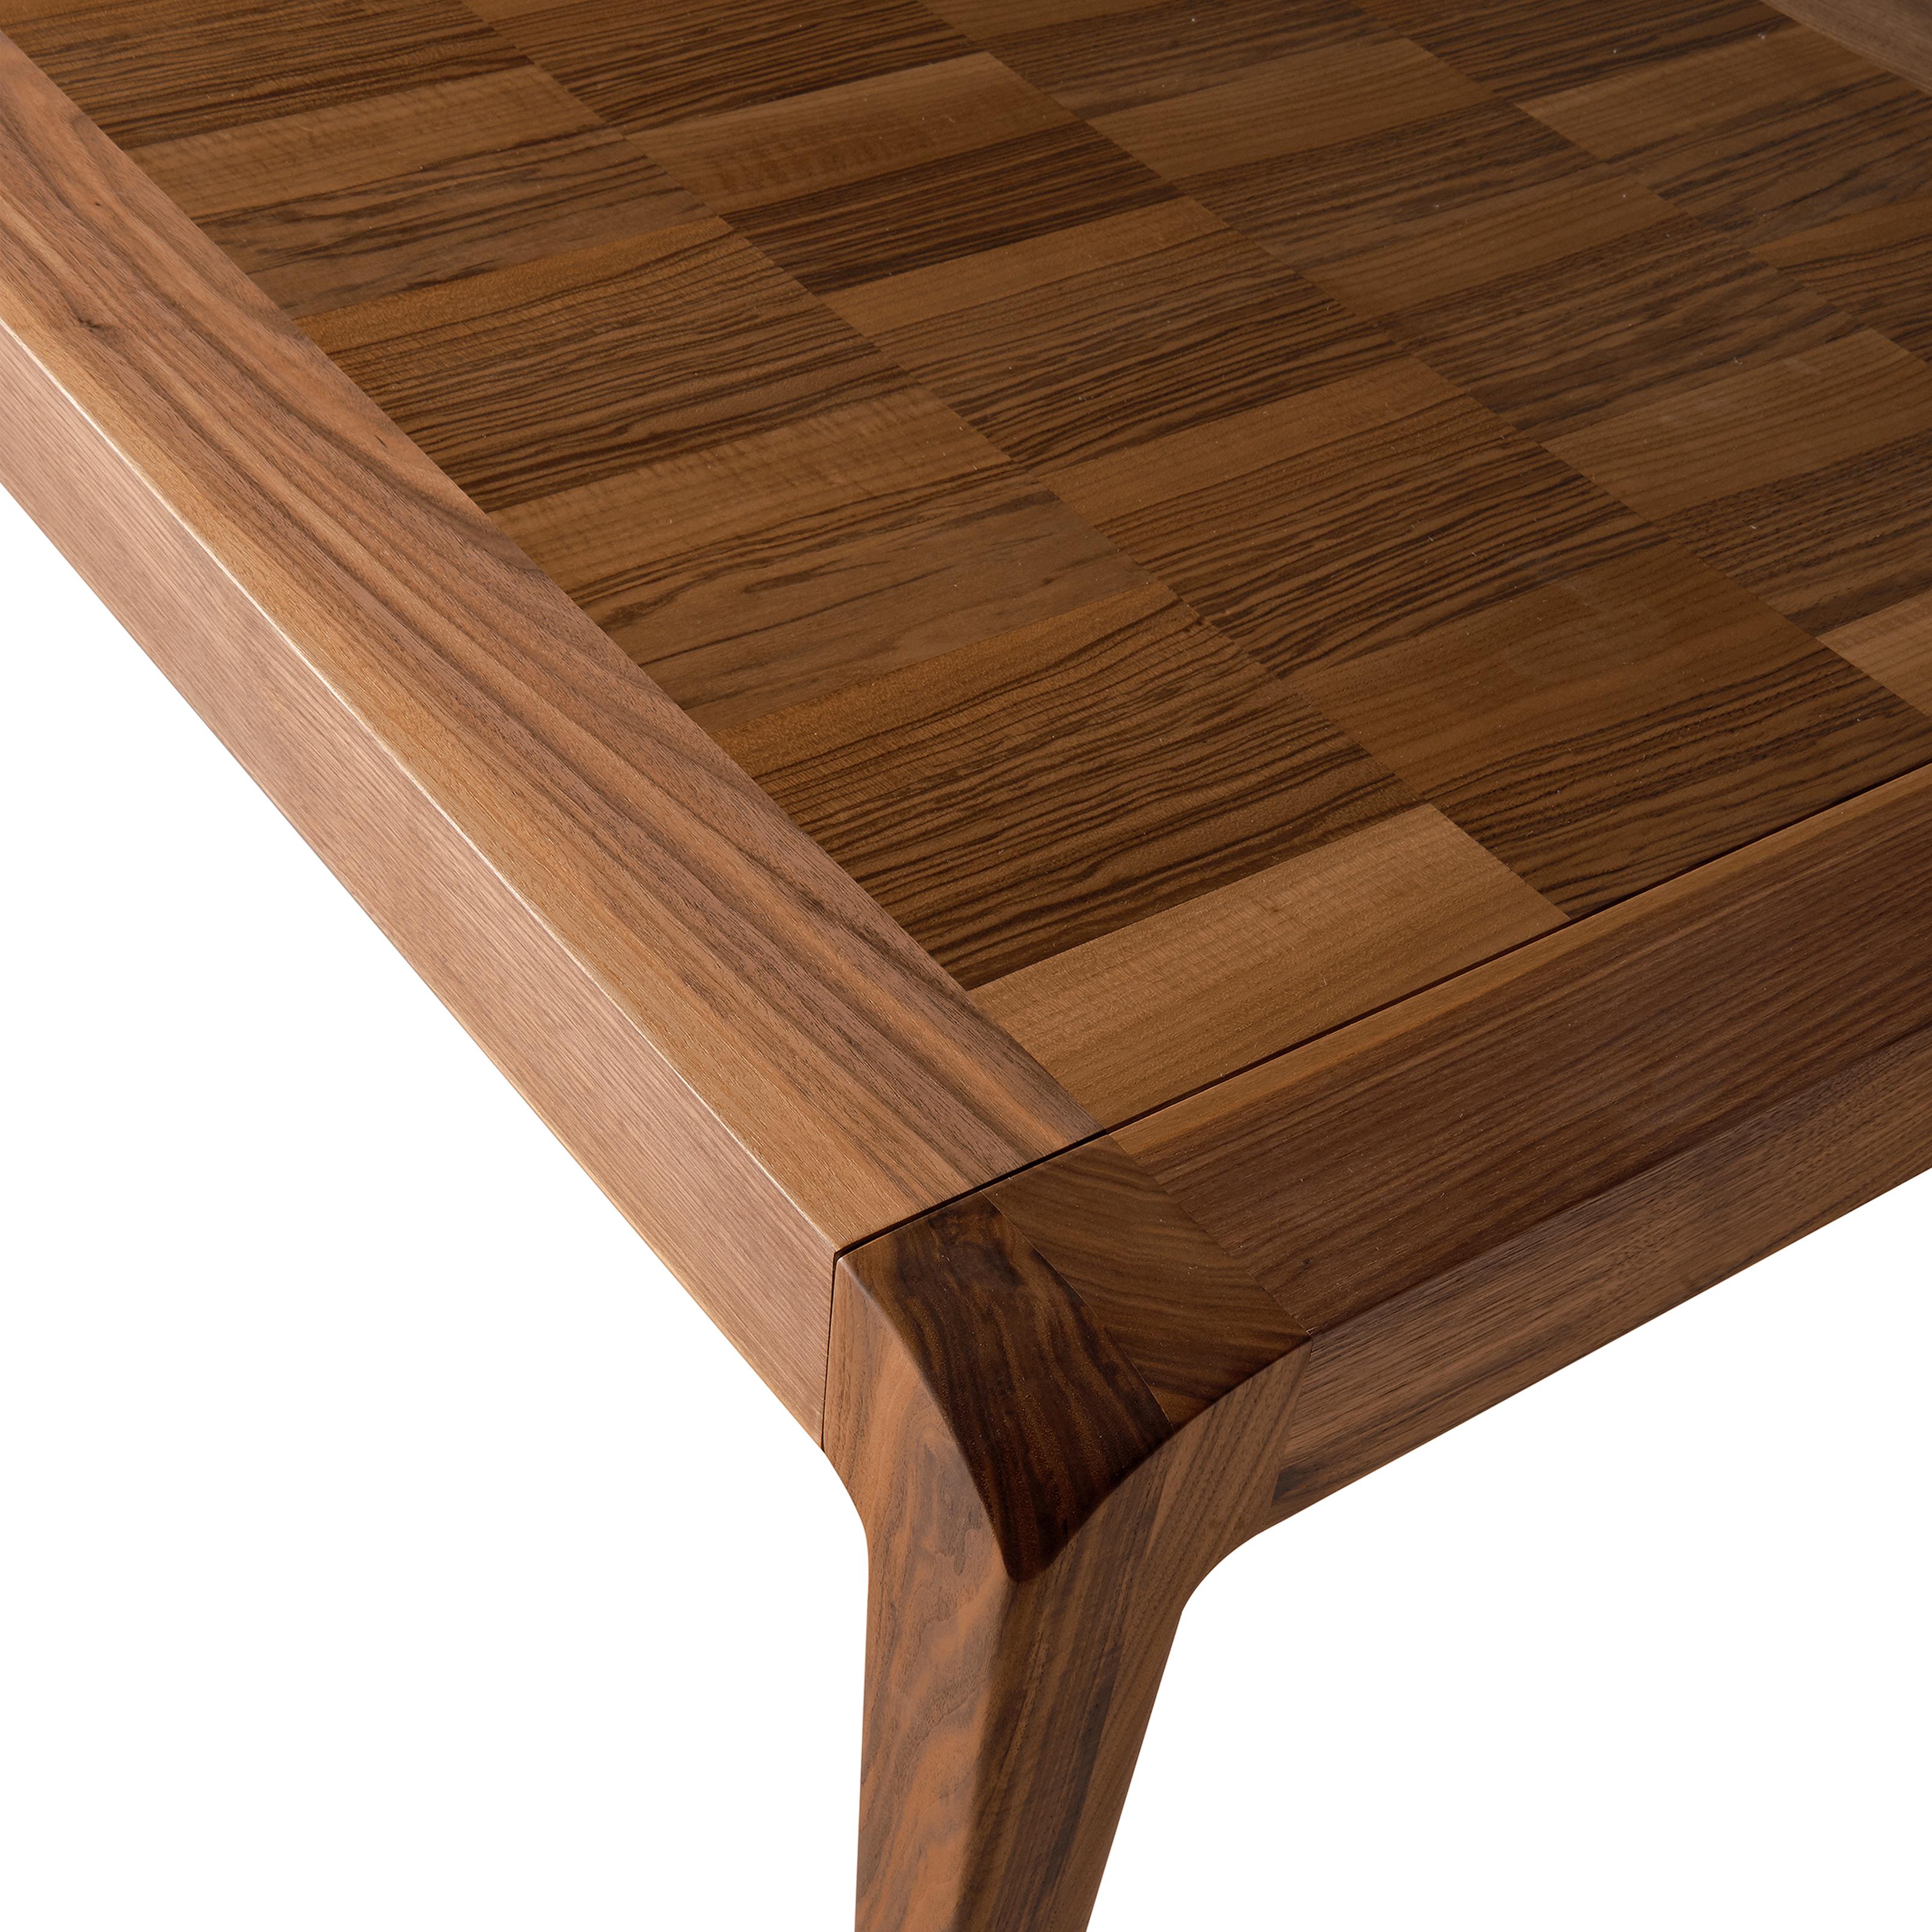 La table extensible Sentiero en bois massif est l'expression du design contemporain et de l'artisanat italien de haute qualité. De forme rectangulaire, il présente une structure et des pieds en gris précieux ou en noyer naturel avec incrustation et